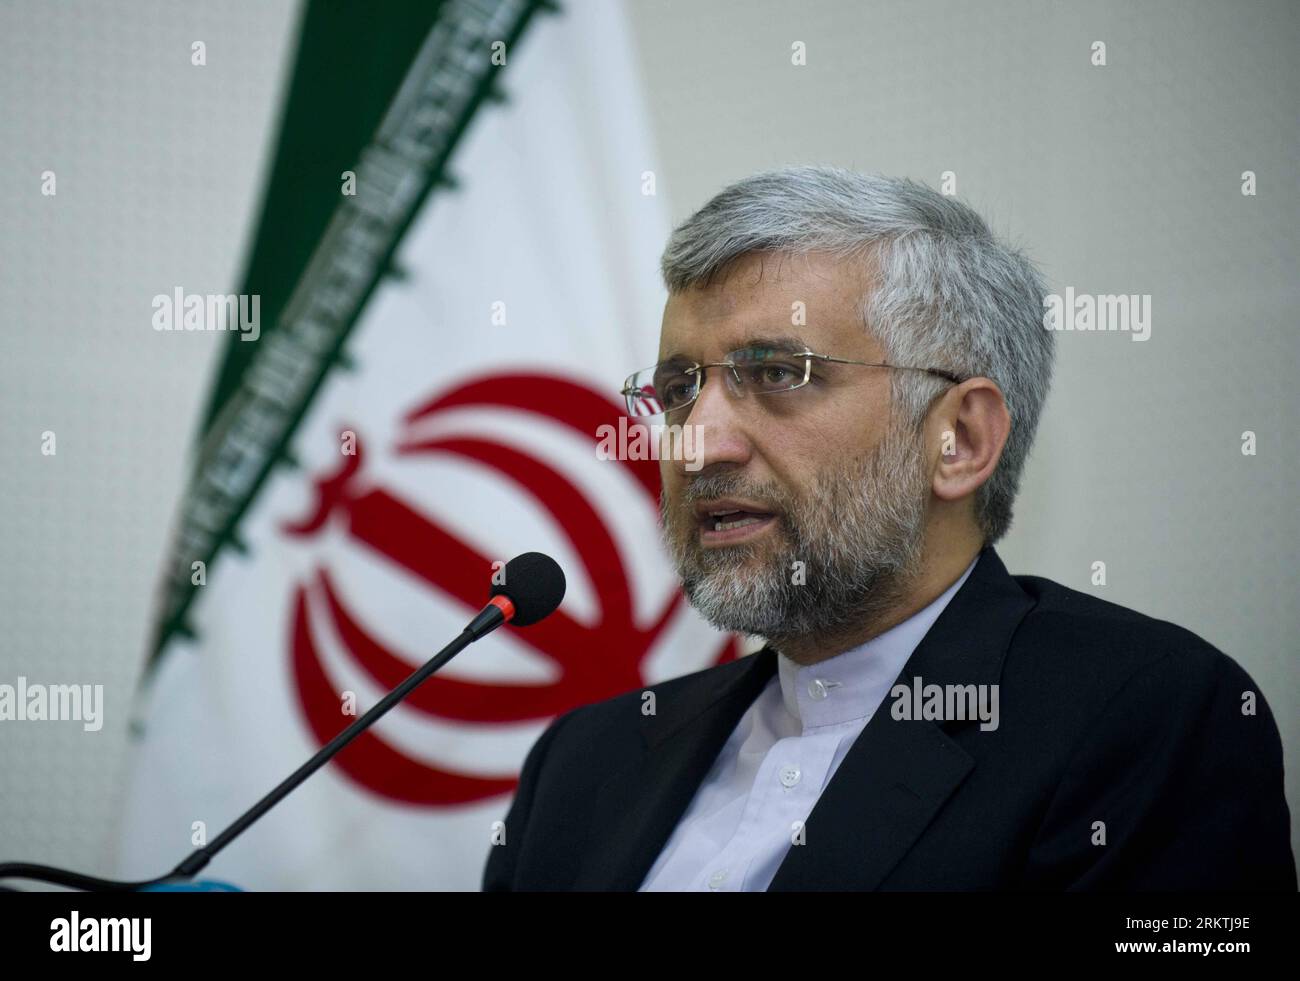 Bildnummer : 58492057 Datum : 19.09.2012 Copyright : imago/Xinhua (120919) -- ISTANBUL, 19 septembre 2012 (Xinhua) -- le négociateur nucléaire iranien Saeed Jalili prend la parole lors d'une conférence de presse au consulat général iranien à Istanbul en Turquie, le 19 septembre 2012. Saeed Jalili a déclaré ici mercredi que l'Iran et l'Union européenne (UE) ont convenu de tenir un nouveau cycle de négociations nucléaires dans un avenir proche. (Xinhua/Ma Yan)(yby) TURQUIE-ISTANBUL-IRAN-NUCLEAR-eu PUBLICATIONxNOTxINxCHN Politik People Chefunterhändler Unterhändler Atomgespräche Atom Gespräche xas x0x Porträt premiumd 2012 quer 58492057 Banque D'Images